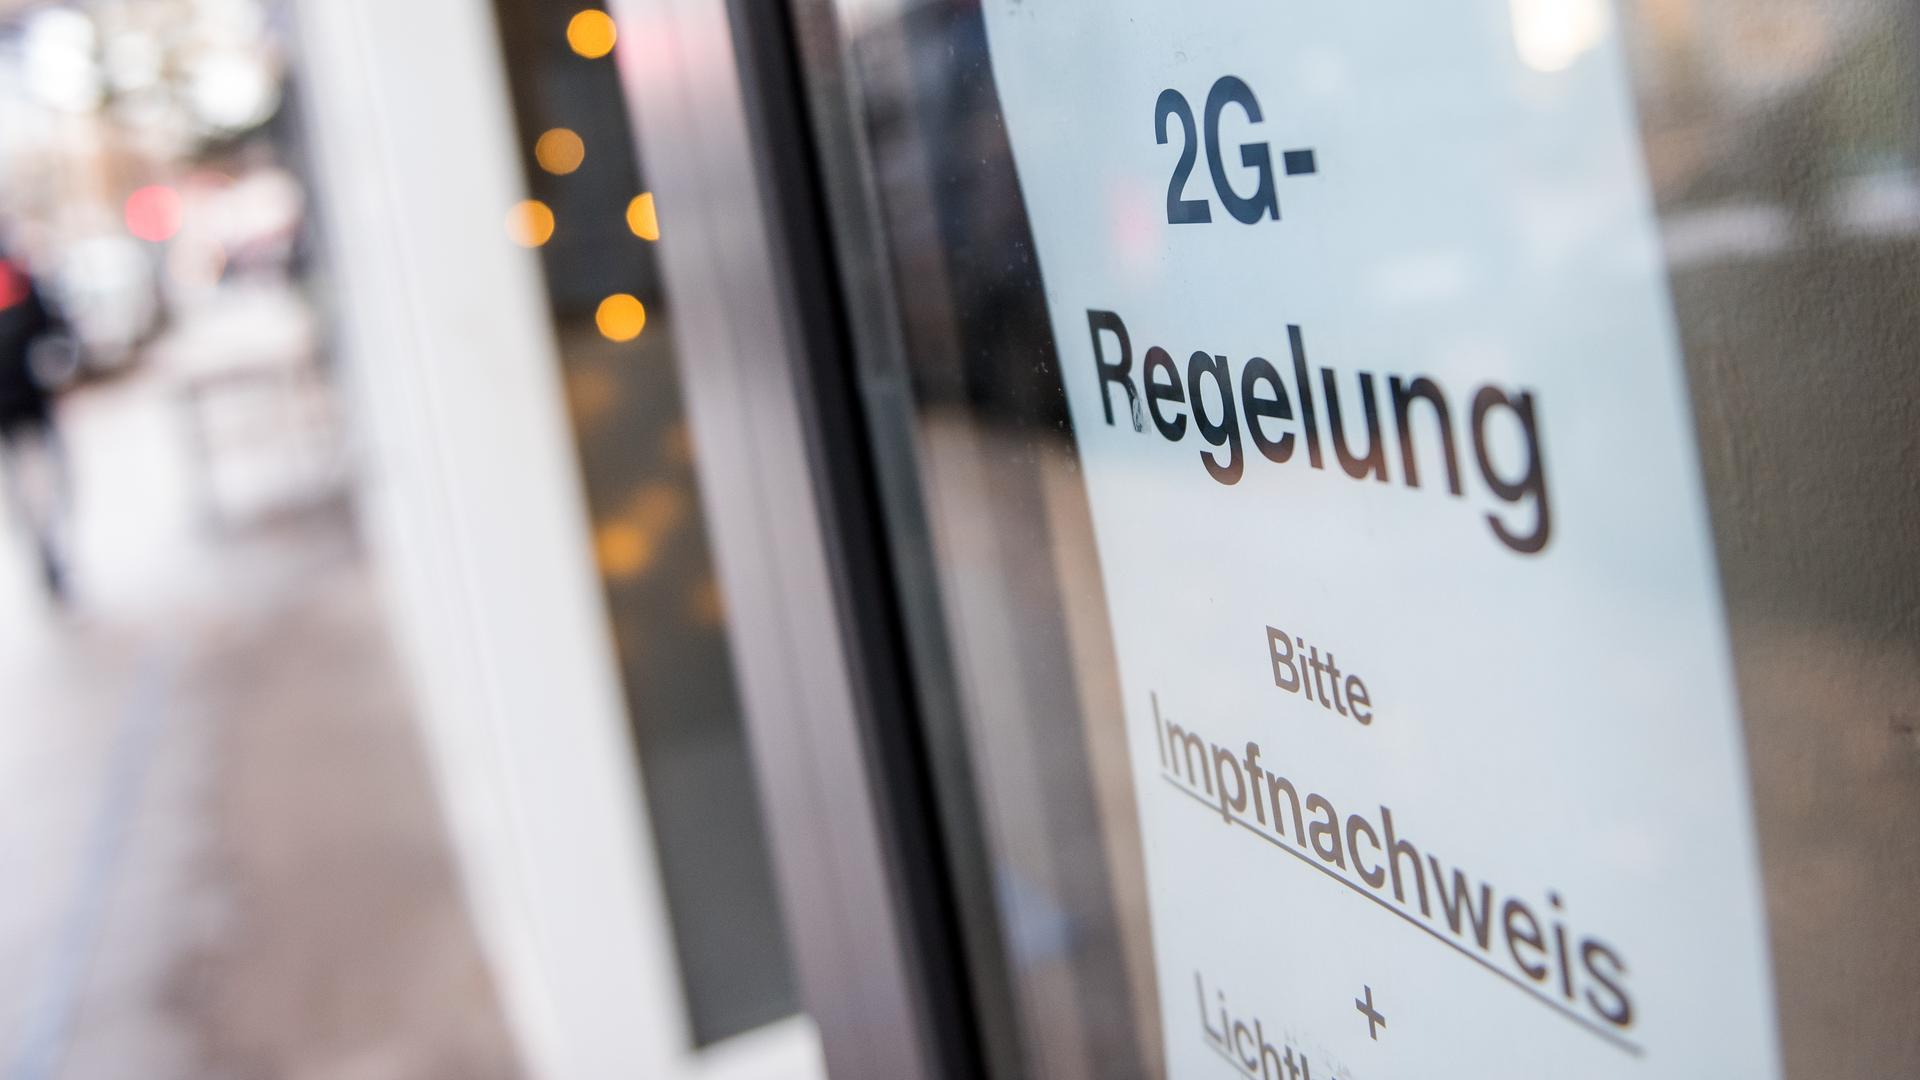 Ein Schild mit der Aufschrift "2G-Regelung. Bitte Impfnachweis" hängt an dem Fenster von einem Lokal.